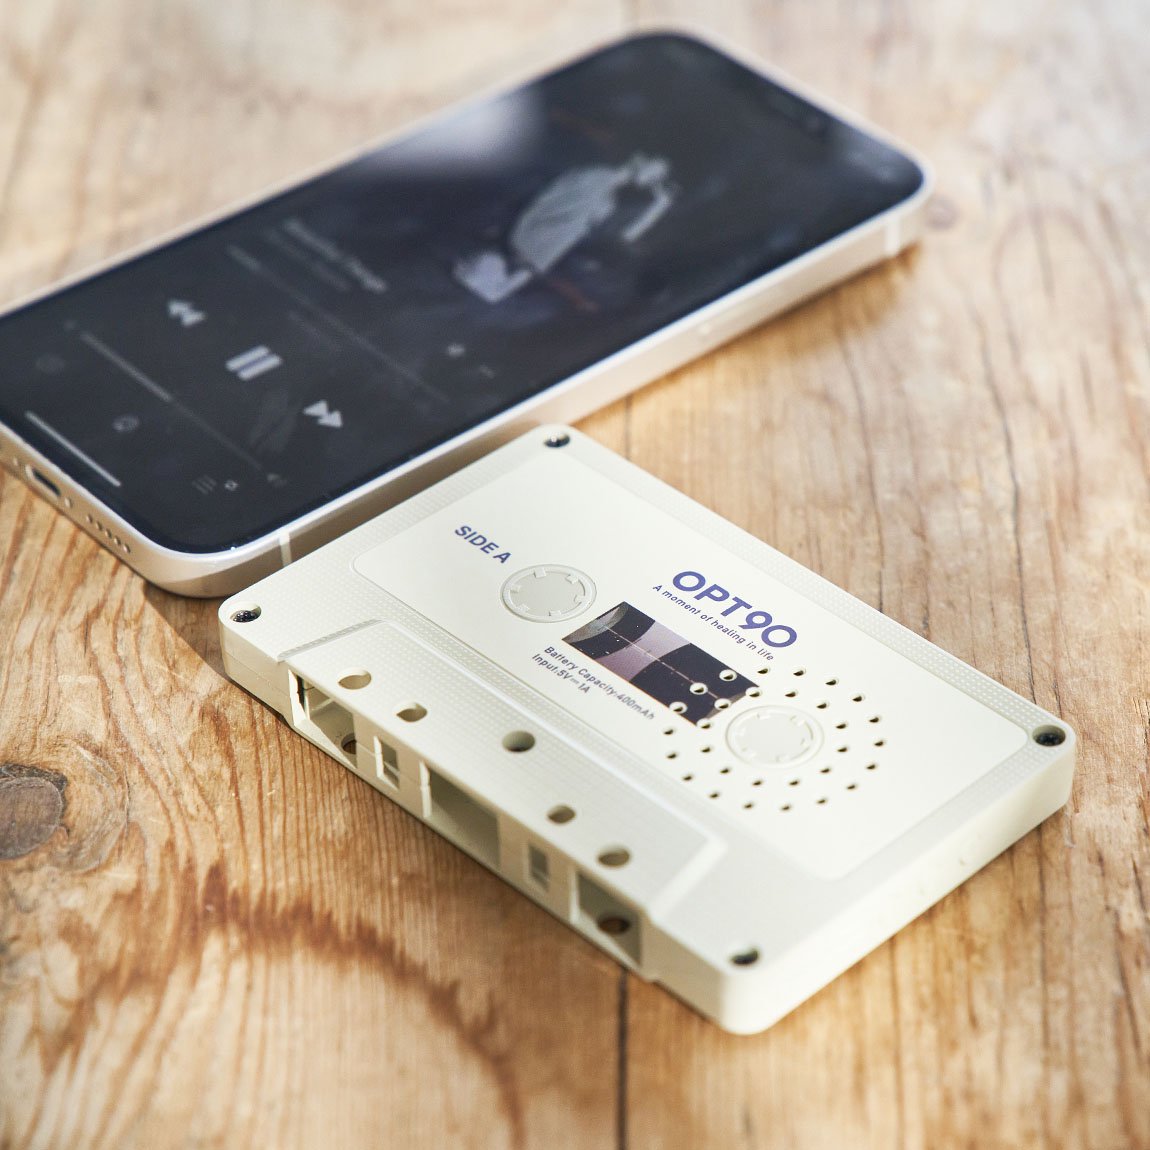  シンシア　Opt  オプト カセットテープ型 Bluetoothスピーカー カセットテープ　音楽　音楽好き SDカード対応